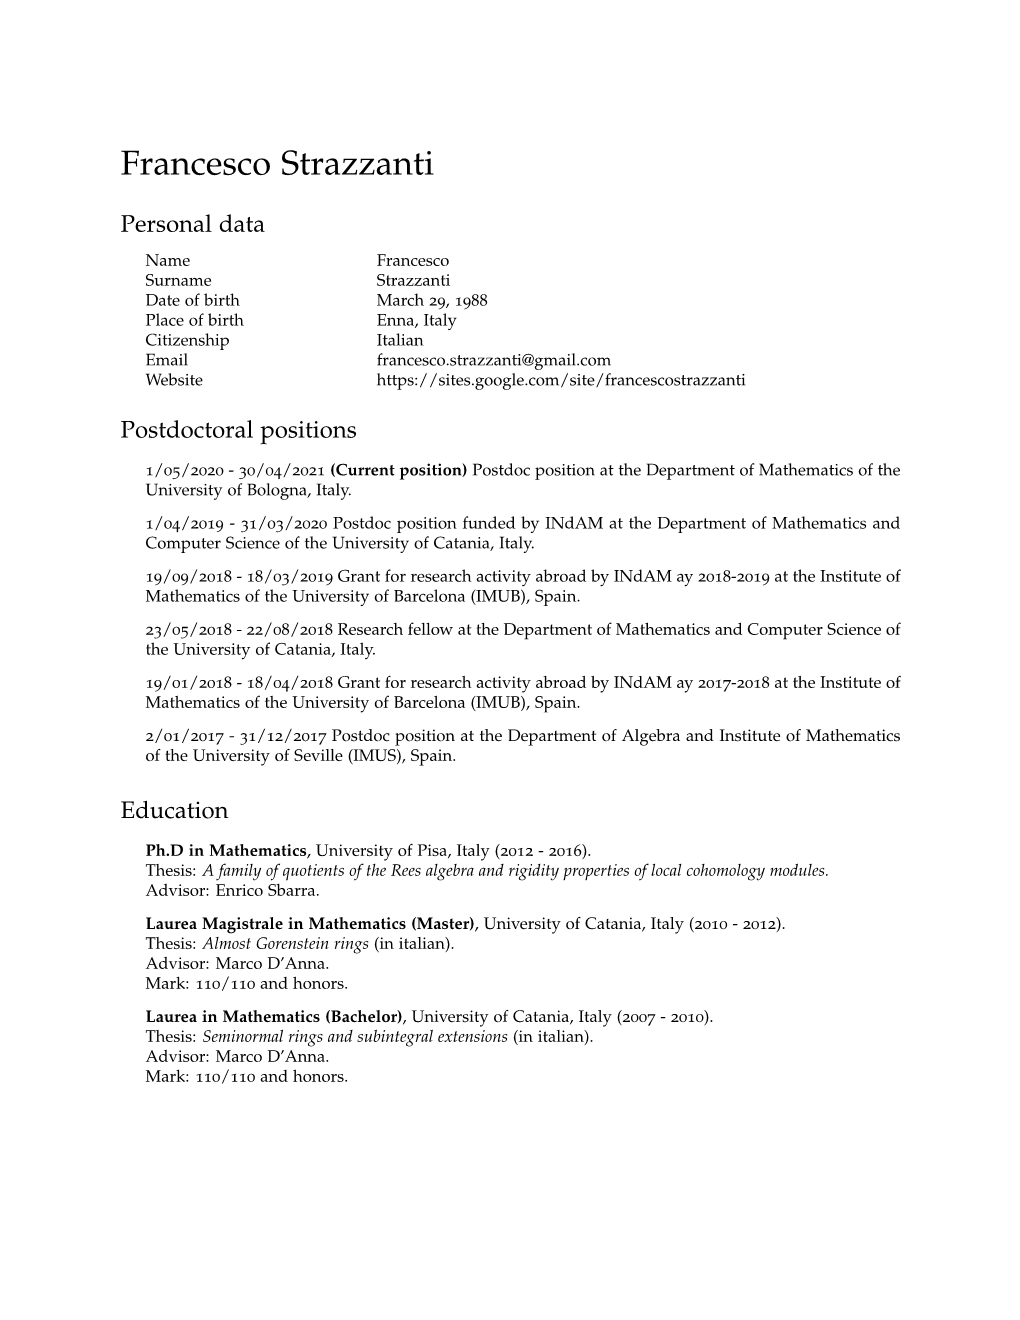 Francesco Strazzanti: Curriculum Vitae